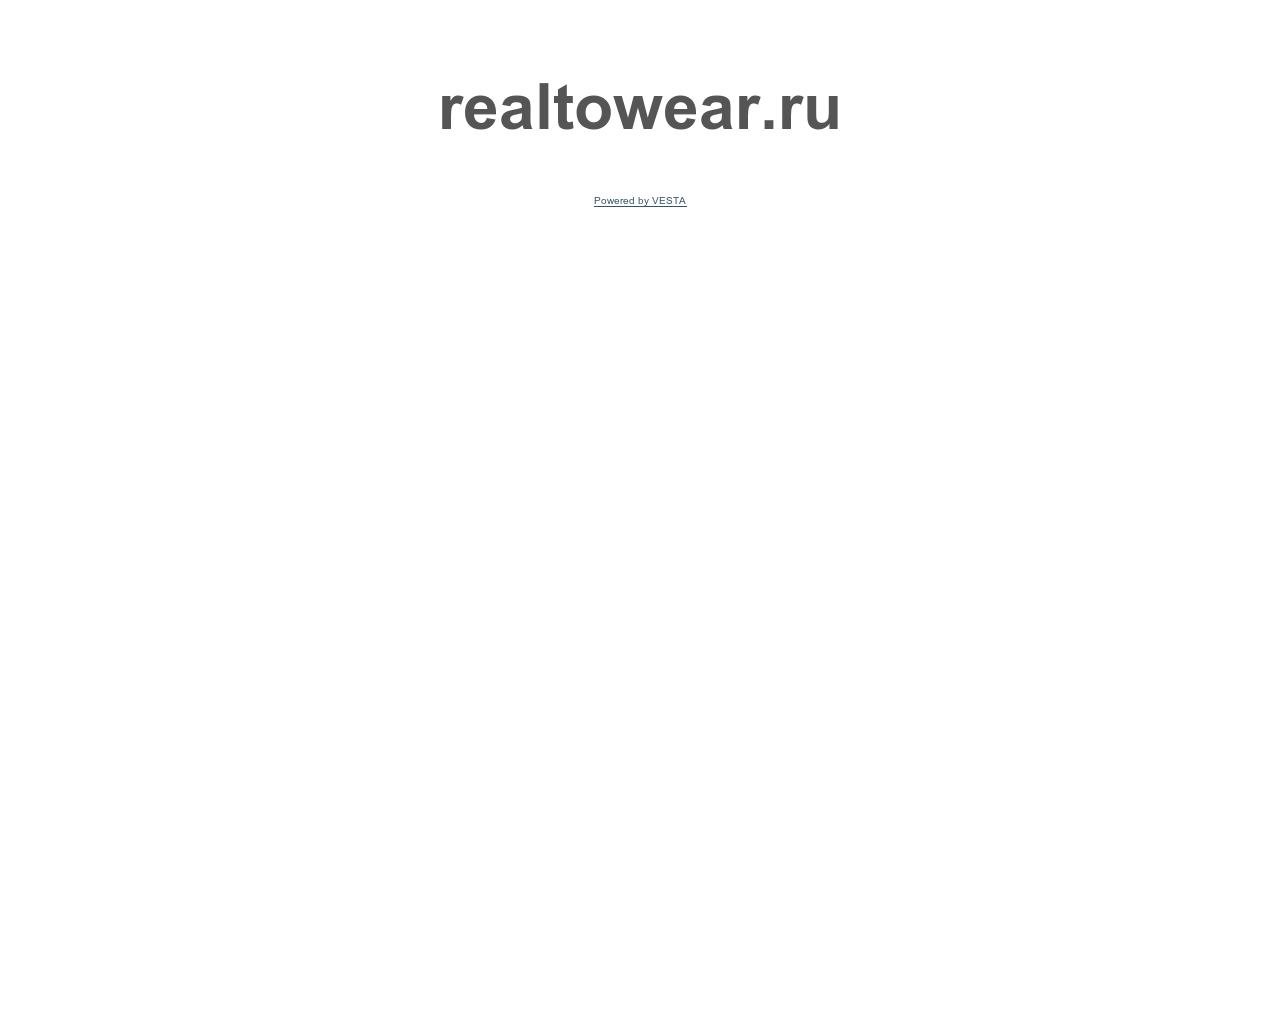 Изображение сайта realtowear.ru в разрешении 1280x1024